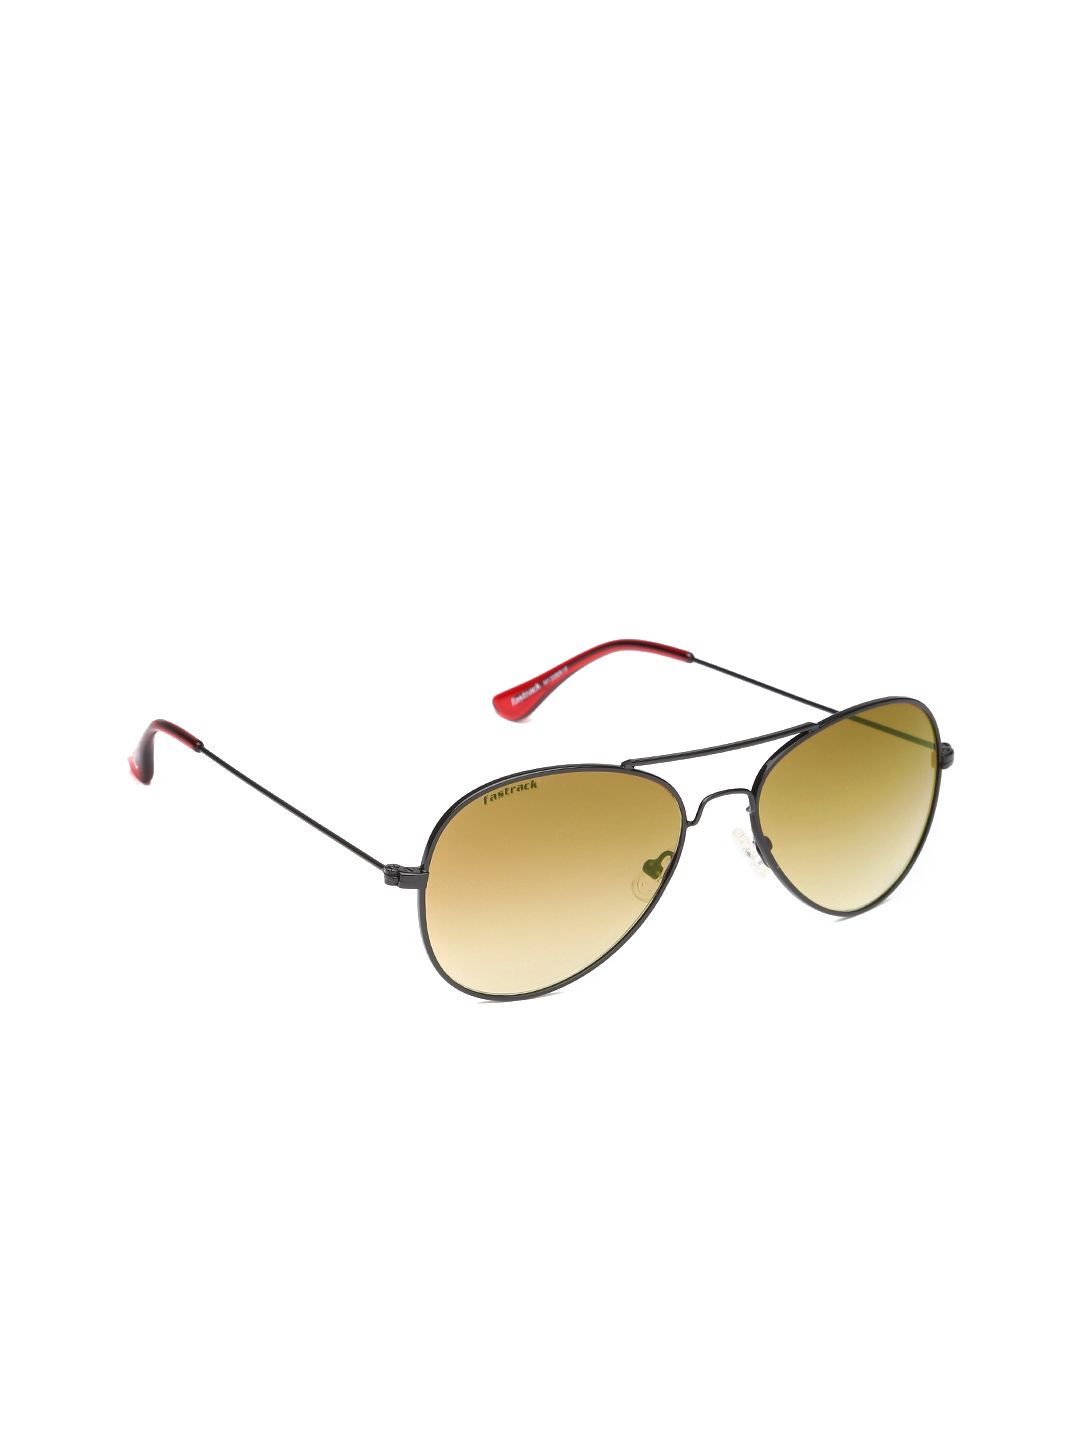 Fastrack Women Aviator Sunglasses M139BR1F Price in India